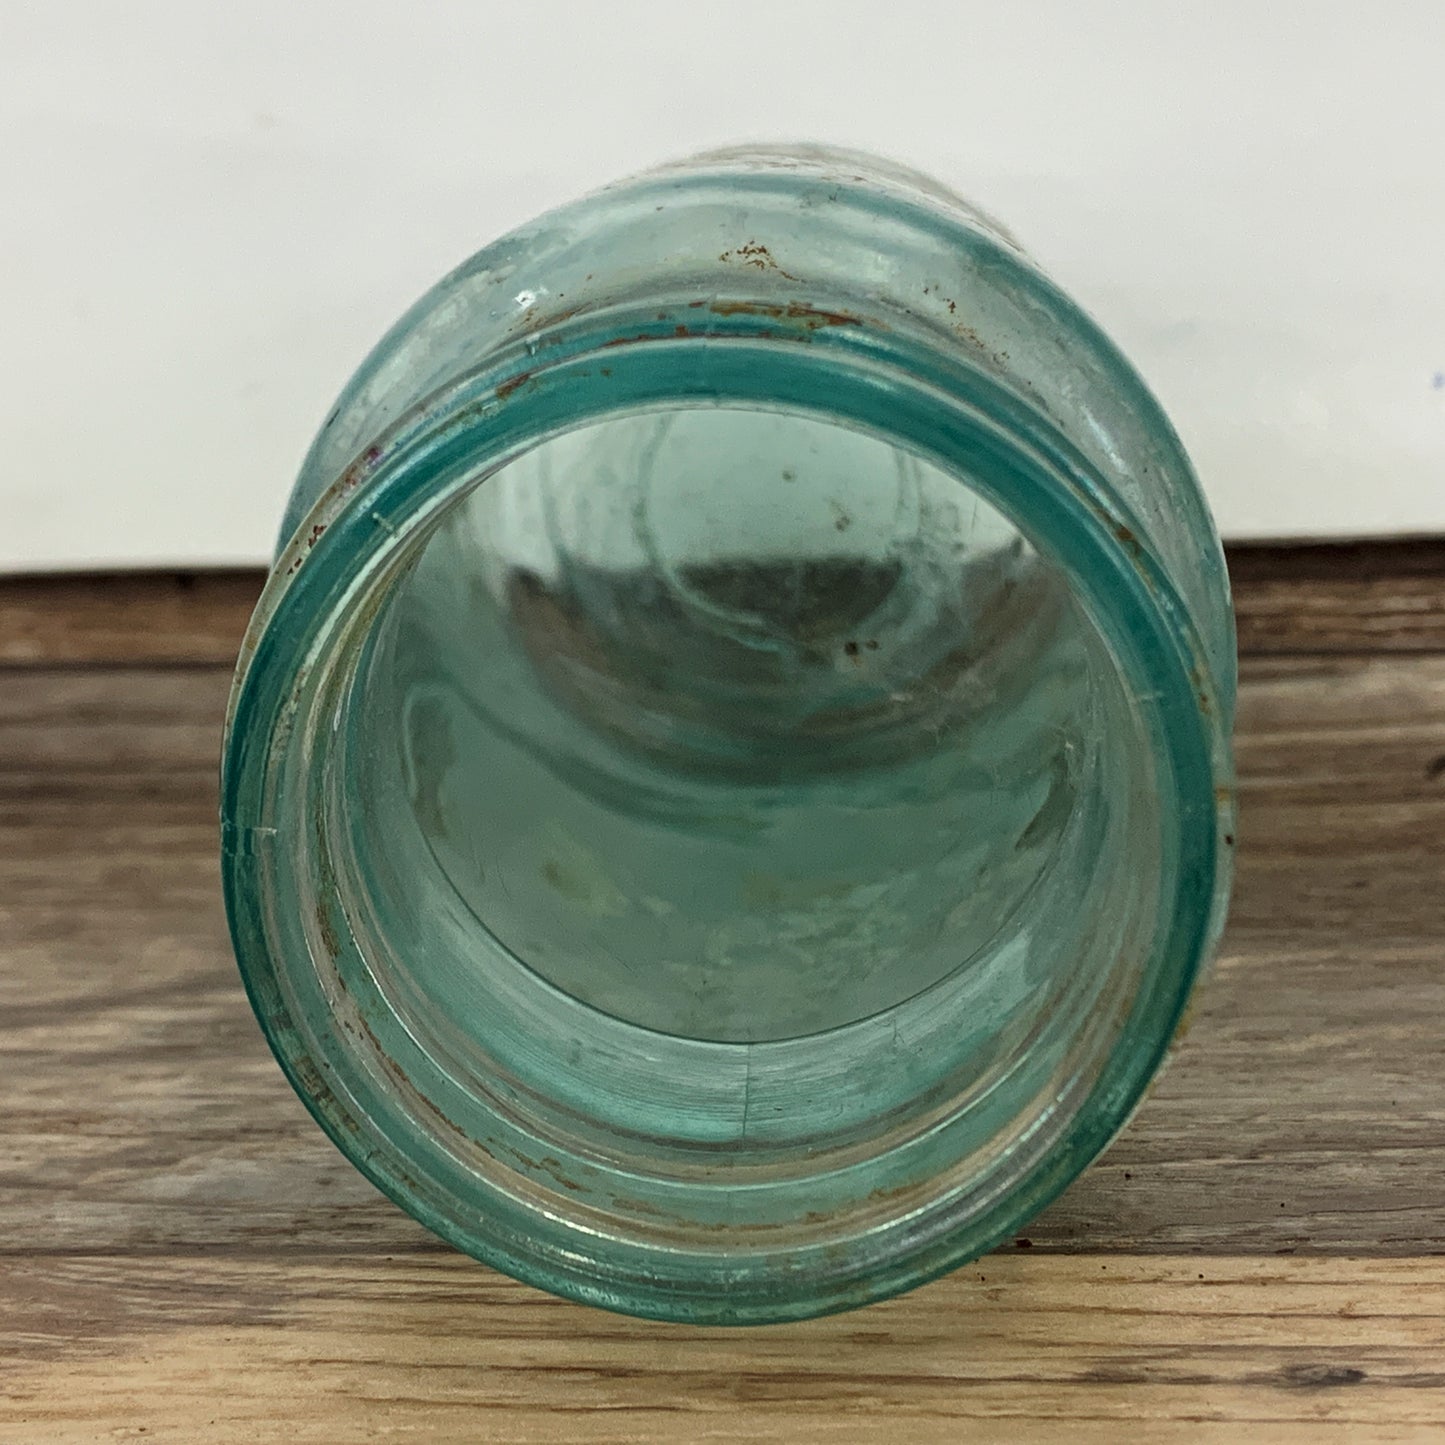 Antique Aqua Blue Glass Bottle, Farm House Decoration